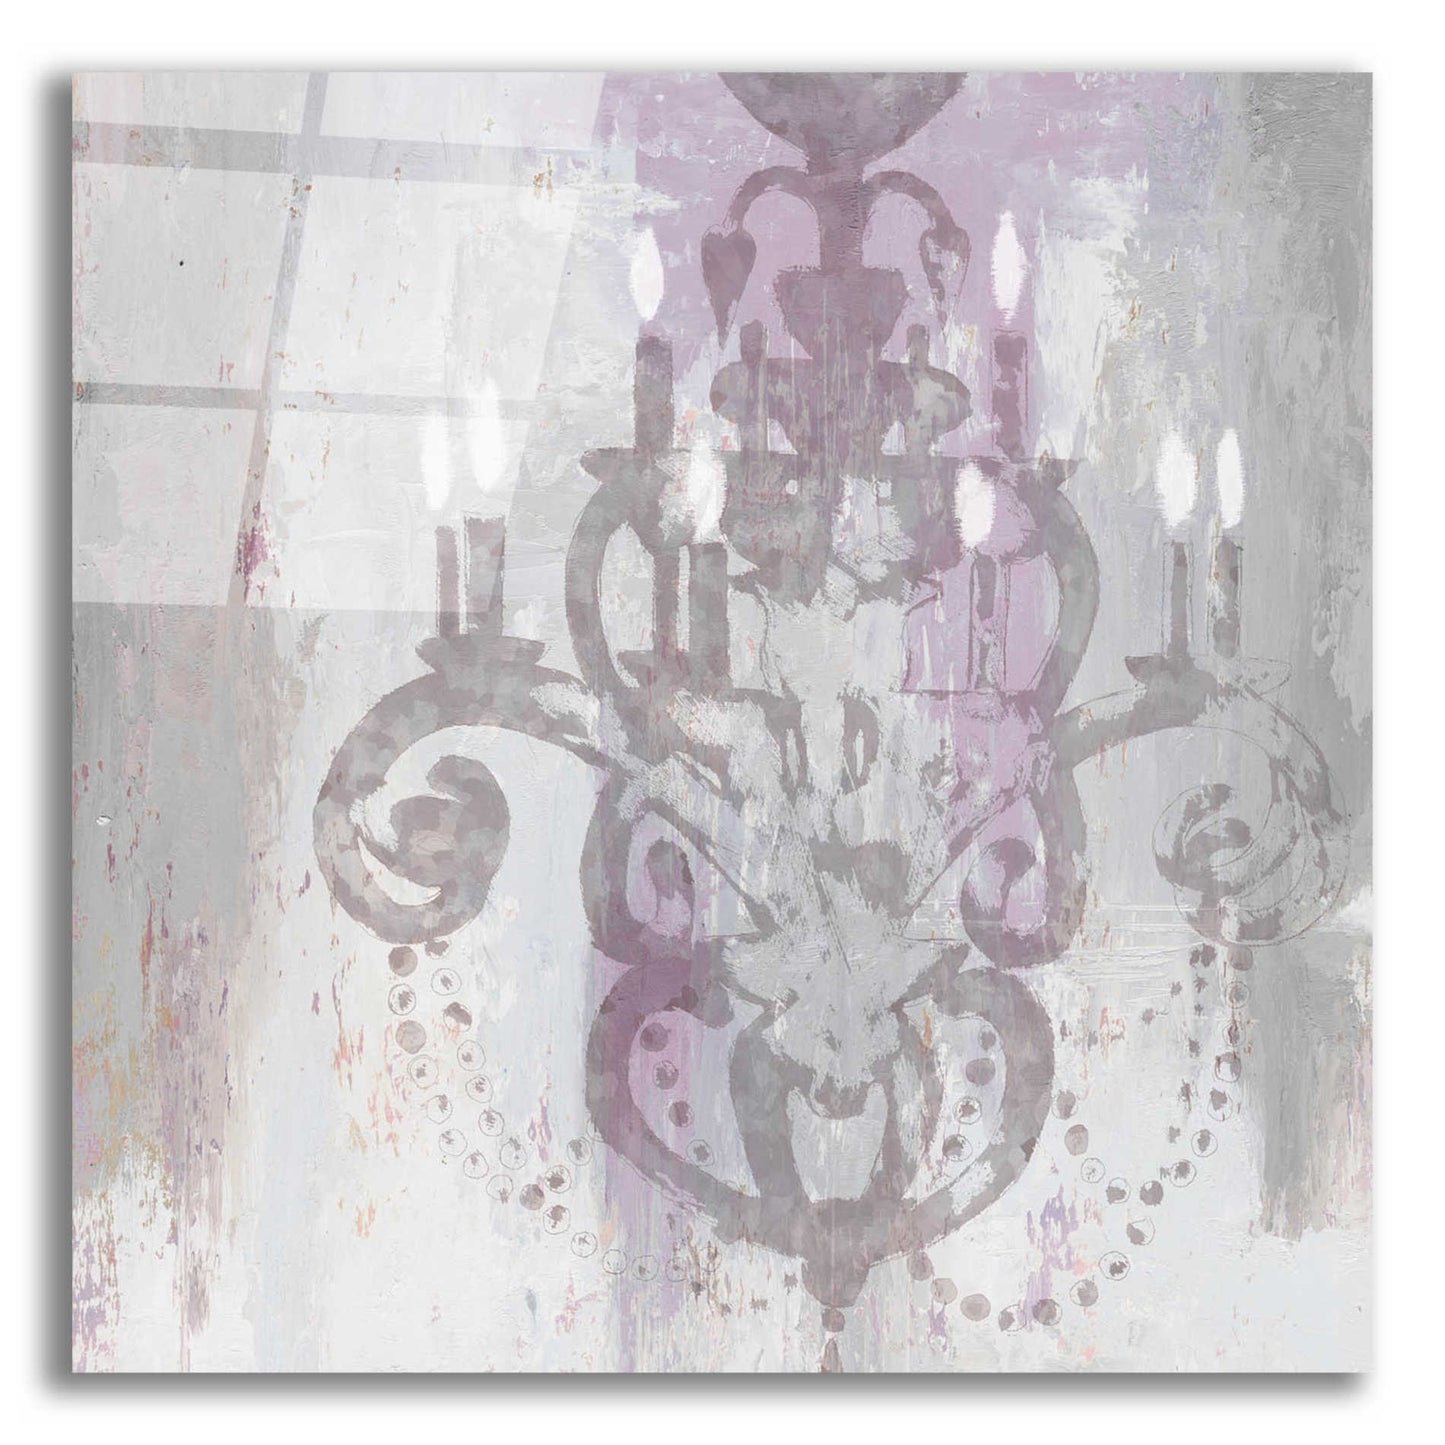 Epic Art 'Candelabra Orchid II' by James Wiens, Acrylic Glass Wall Art,12x12x1.1x0,18x18x1.1x0,26x26x1.74x0,37x37x1.74x0